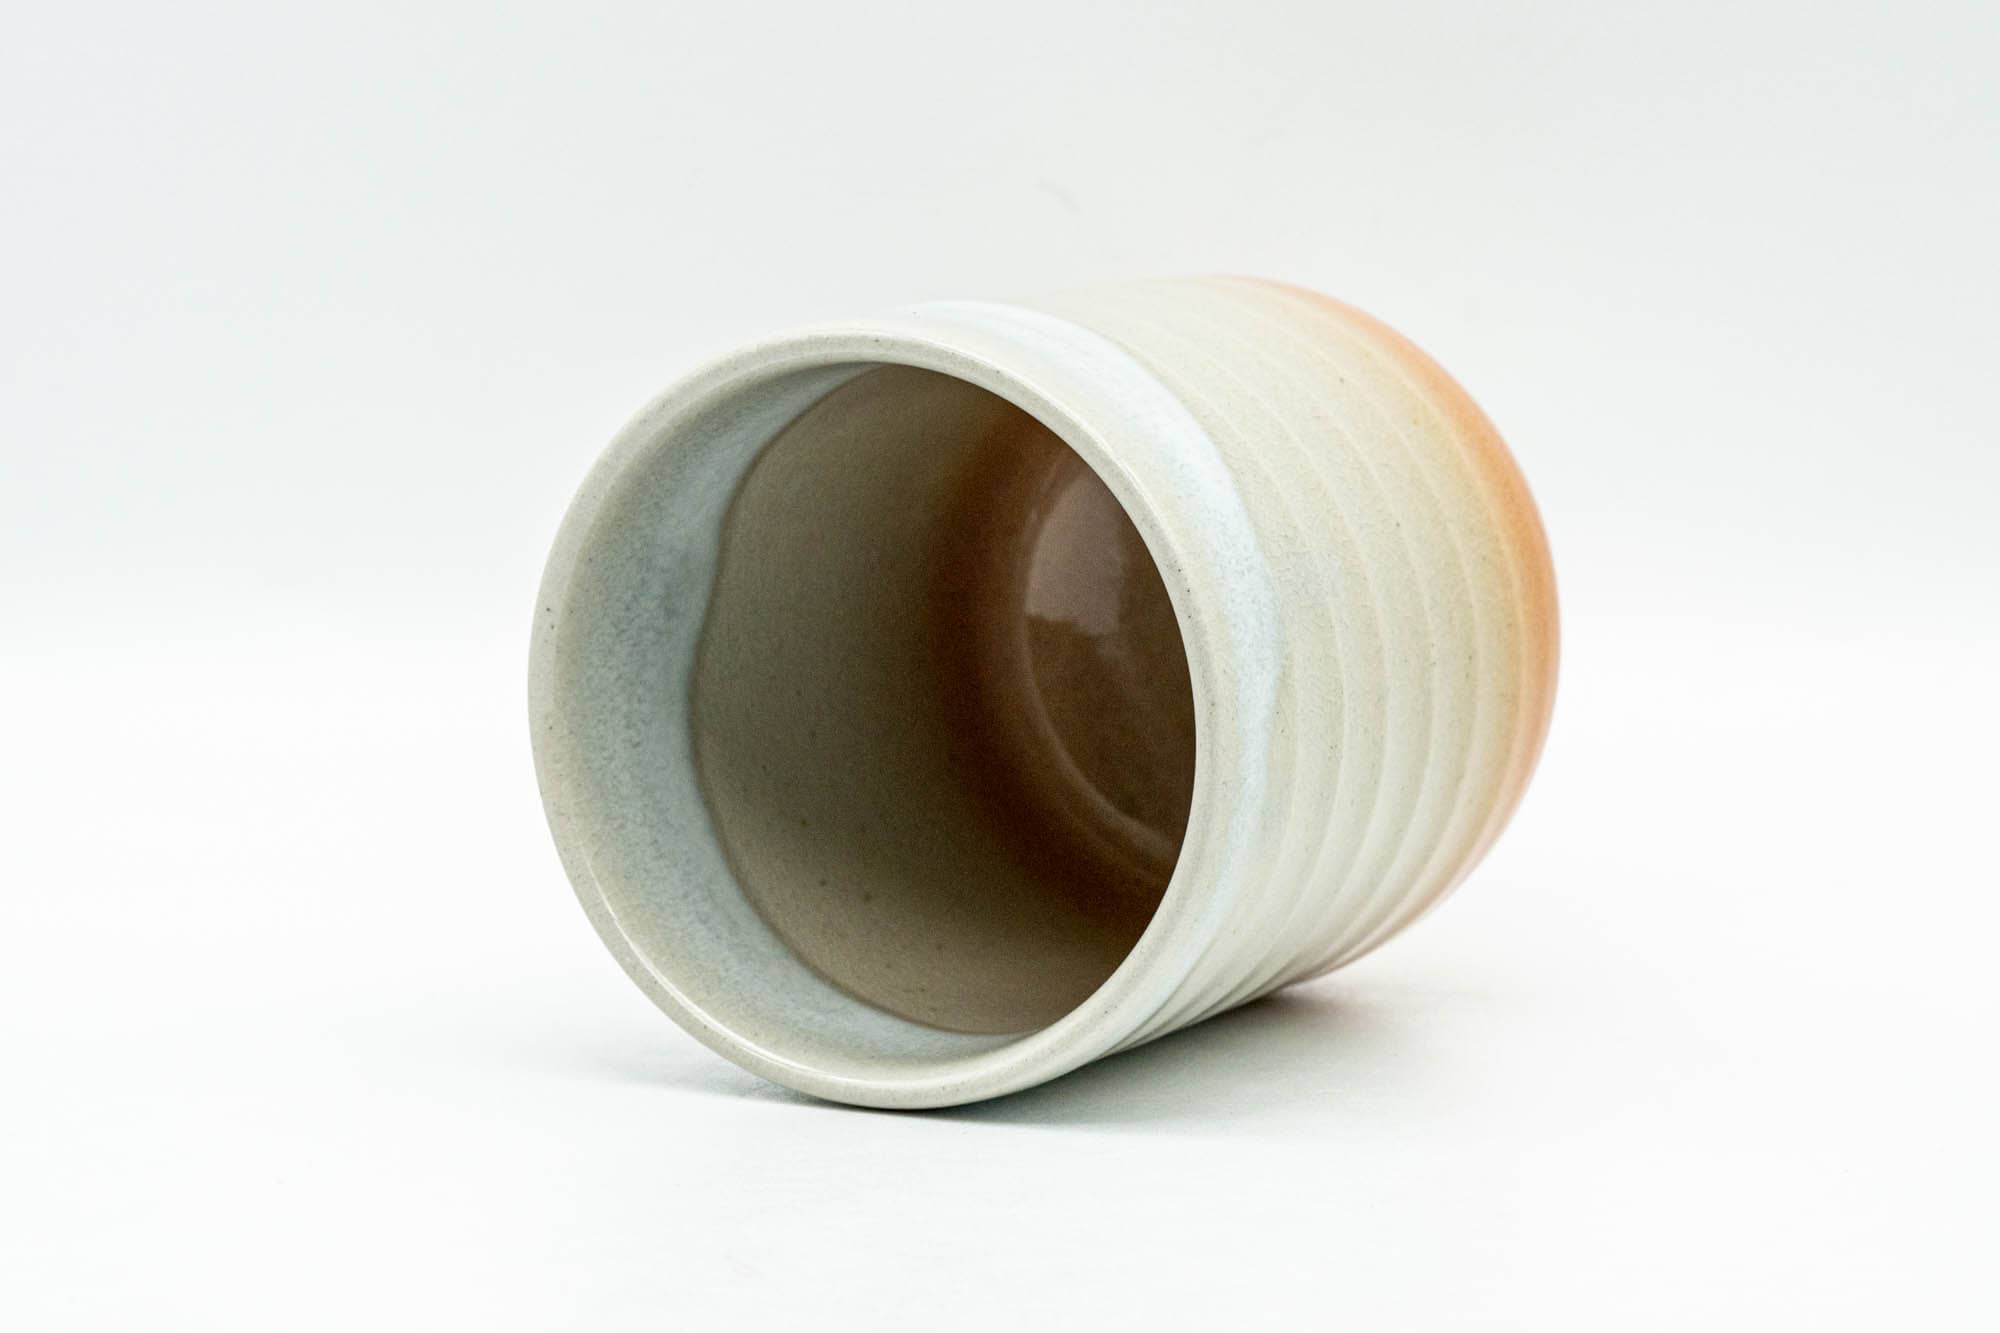 Japanese Teacup - Beige White Glazed Ribbed Hagi-yaki Yunomi - 150ml